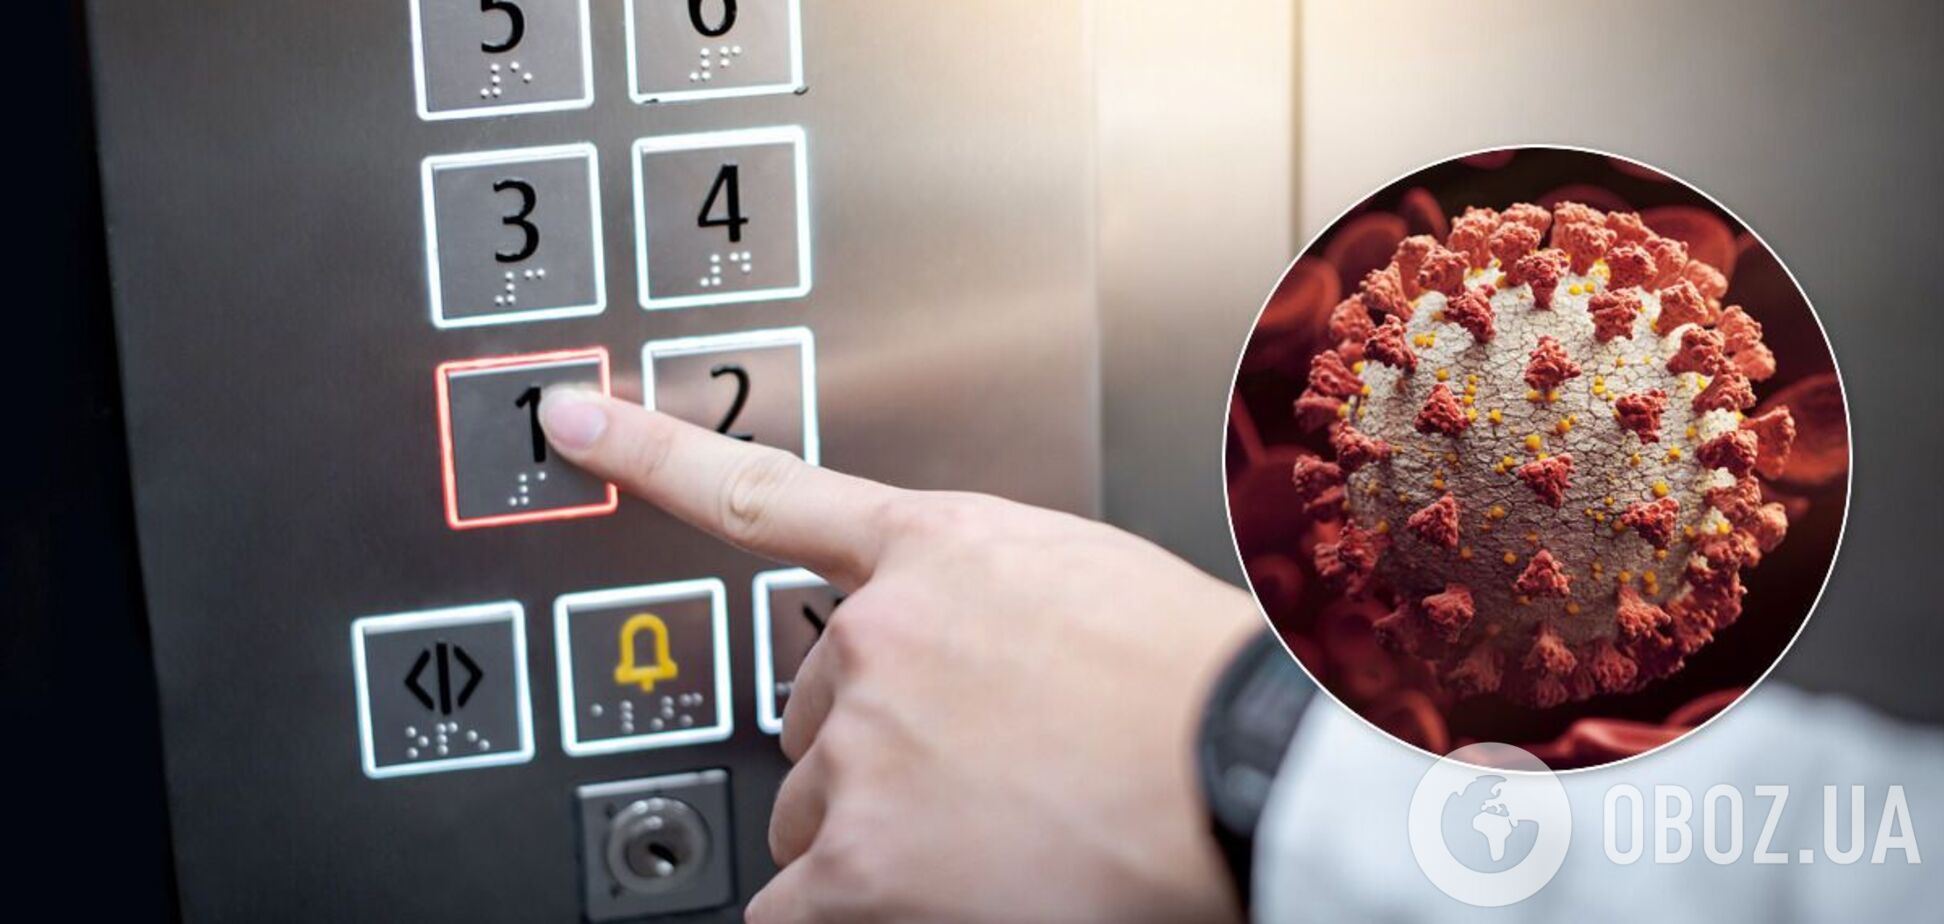 Ученые выяснили, как долго коронавирус 'живет' в лифте